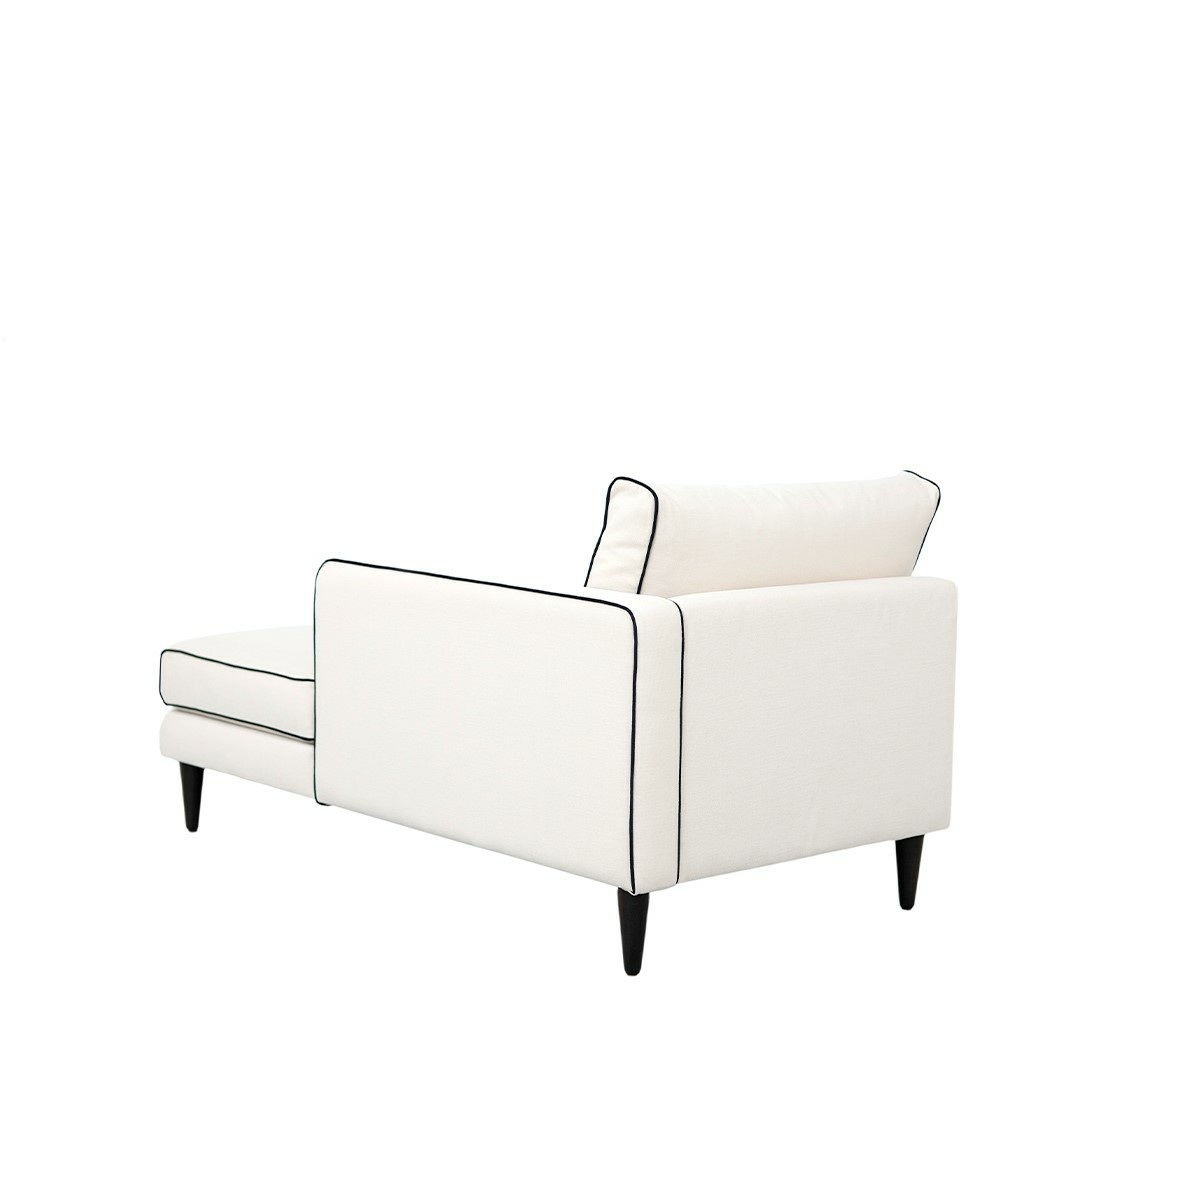 Noa sofa - Right armrest, L180 x P90 x H80 cm - Cotton - image 5